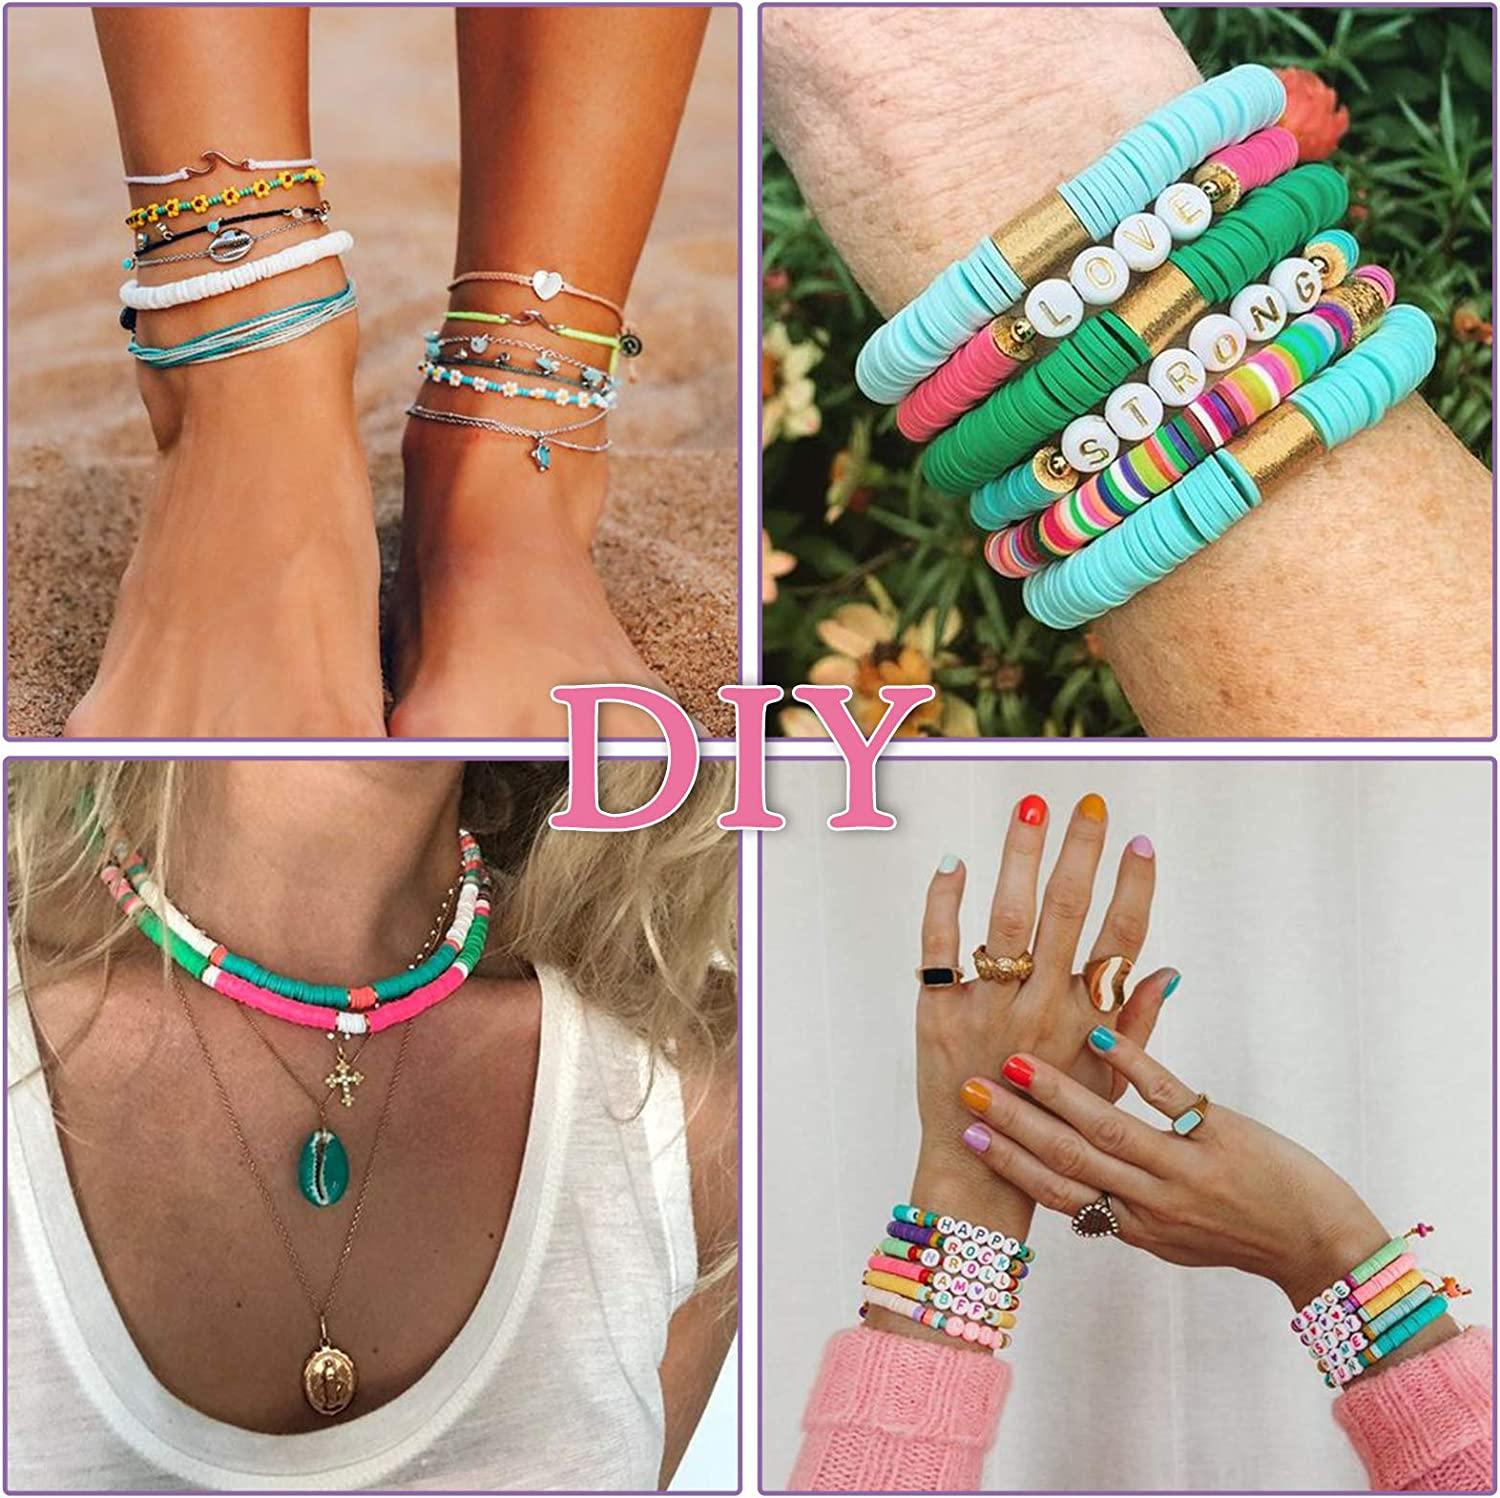 Boho Clay Beads Bracelet Kit Friendship Bracelet Making Kit for